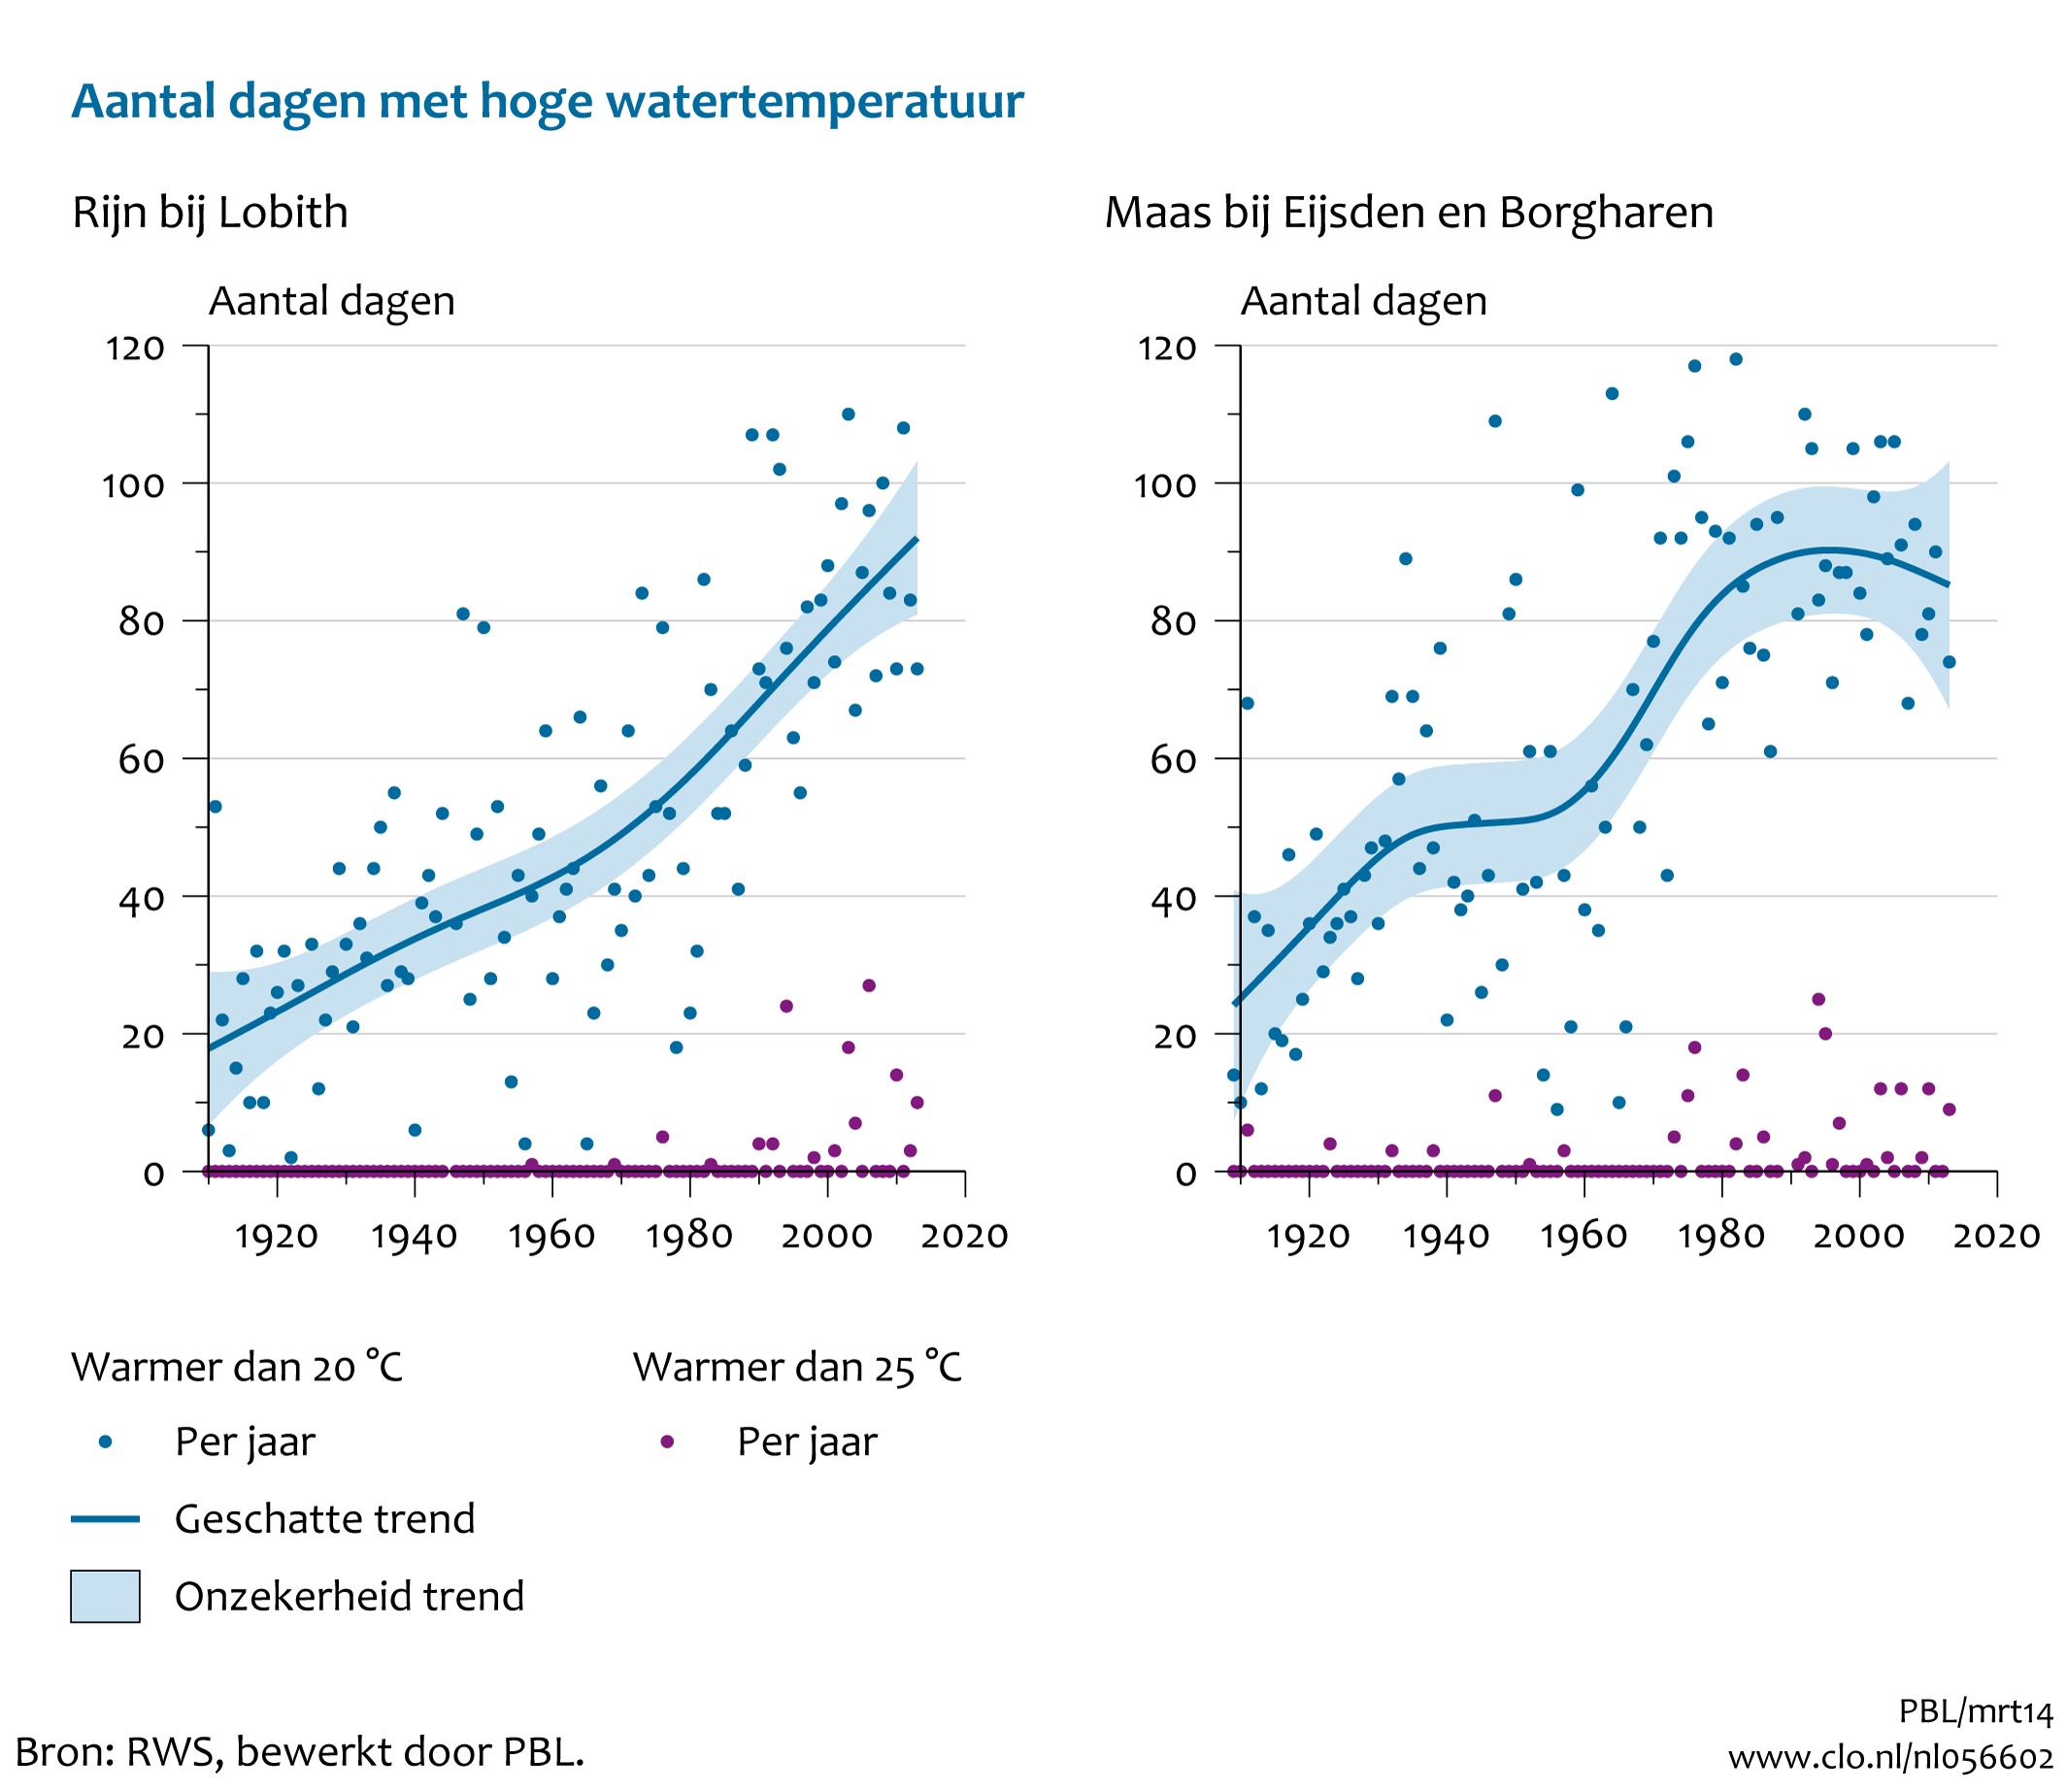 Figuur Aantal dagen met hoge watertemperatuur in Rijn en Maas. In de rest van de tekst wordt deze figuur uitgebreider uitgelegd.